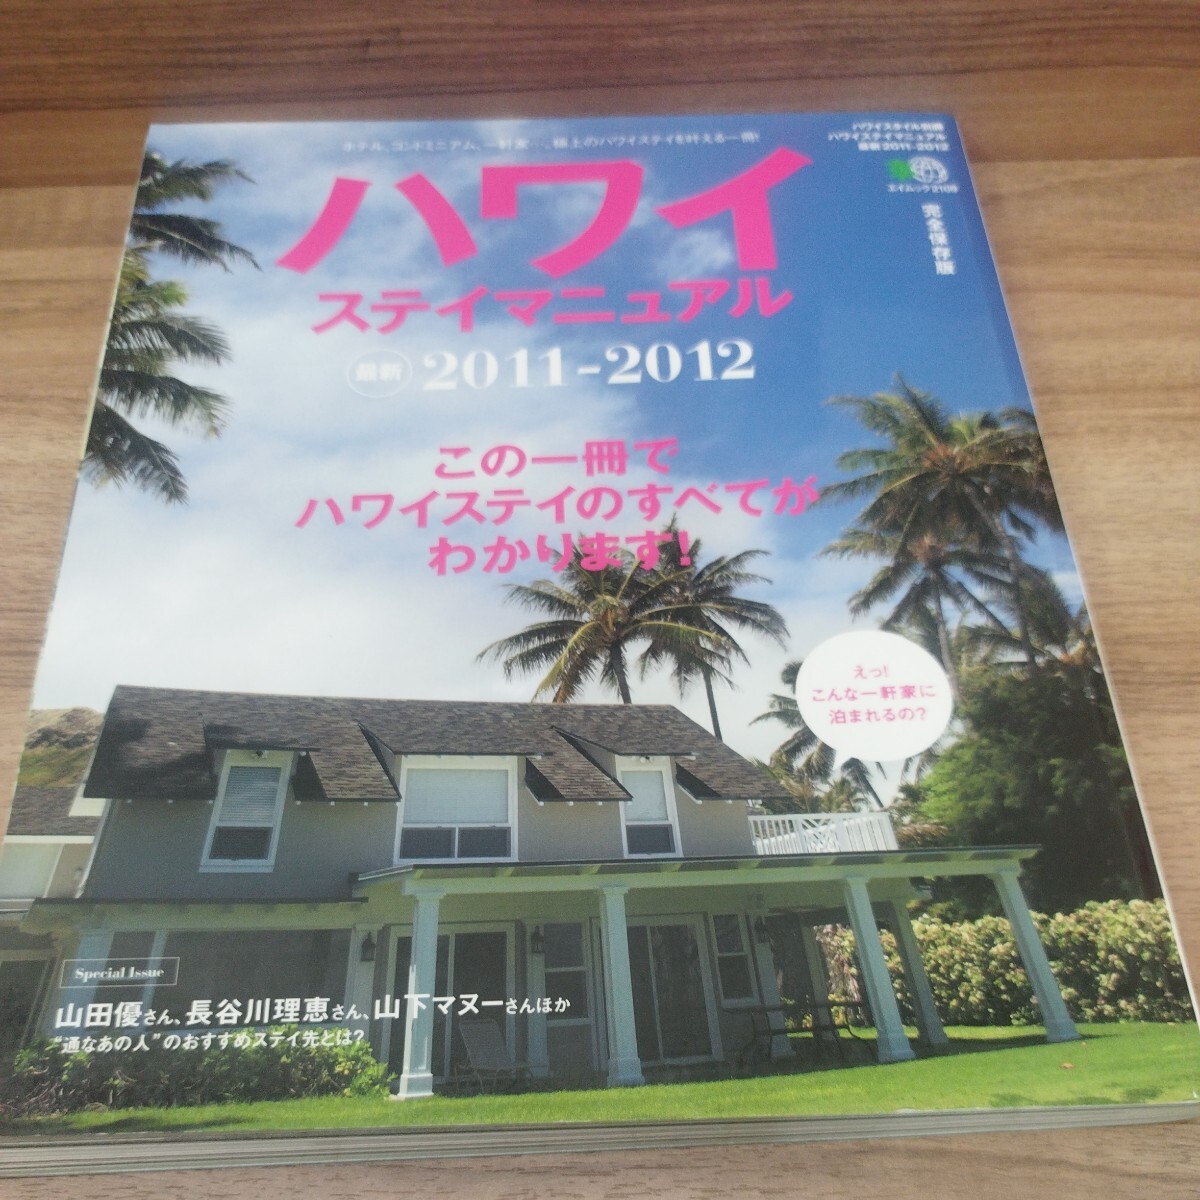 ハワイステイマニュアル2011-2012 ホテル、コンドミニアム、一軒家.,'.。極上のハワイステイを叶える一冊！_画像1